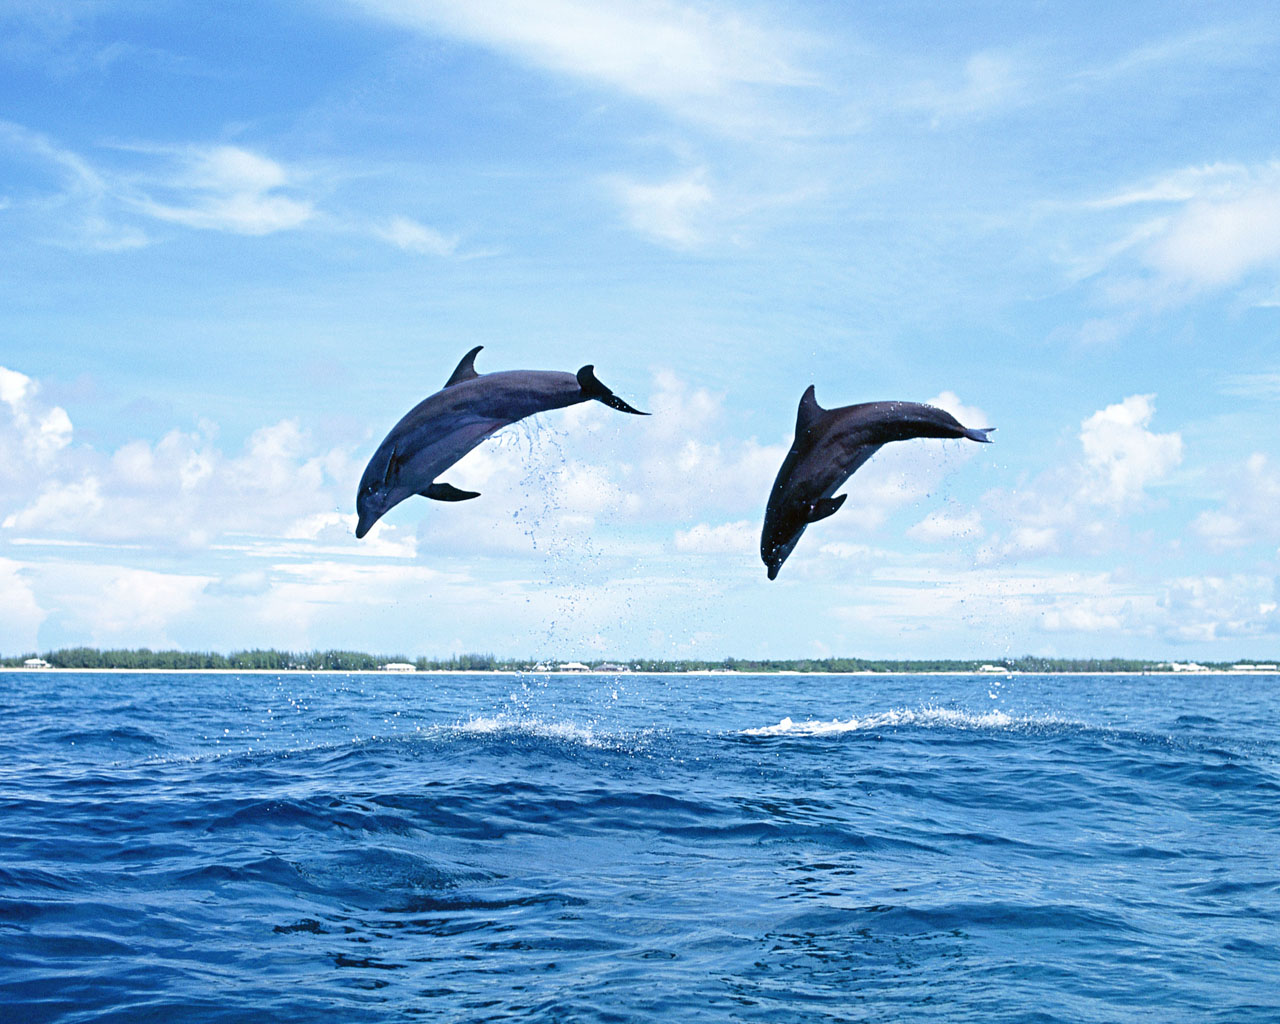 hd dolphin wallpaper hd dolphin wallpaper hd dolphin wallpaper hd 1280x1024